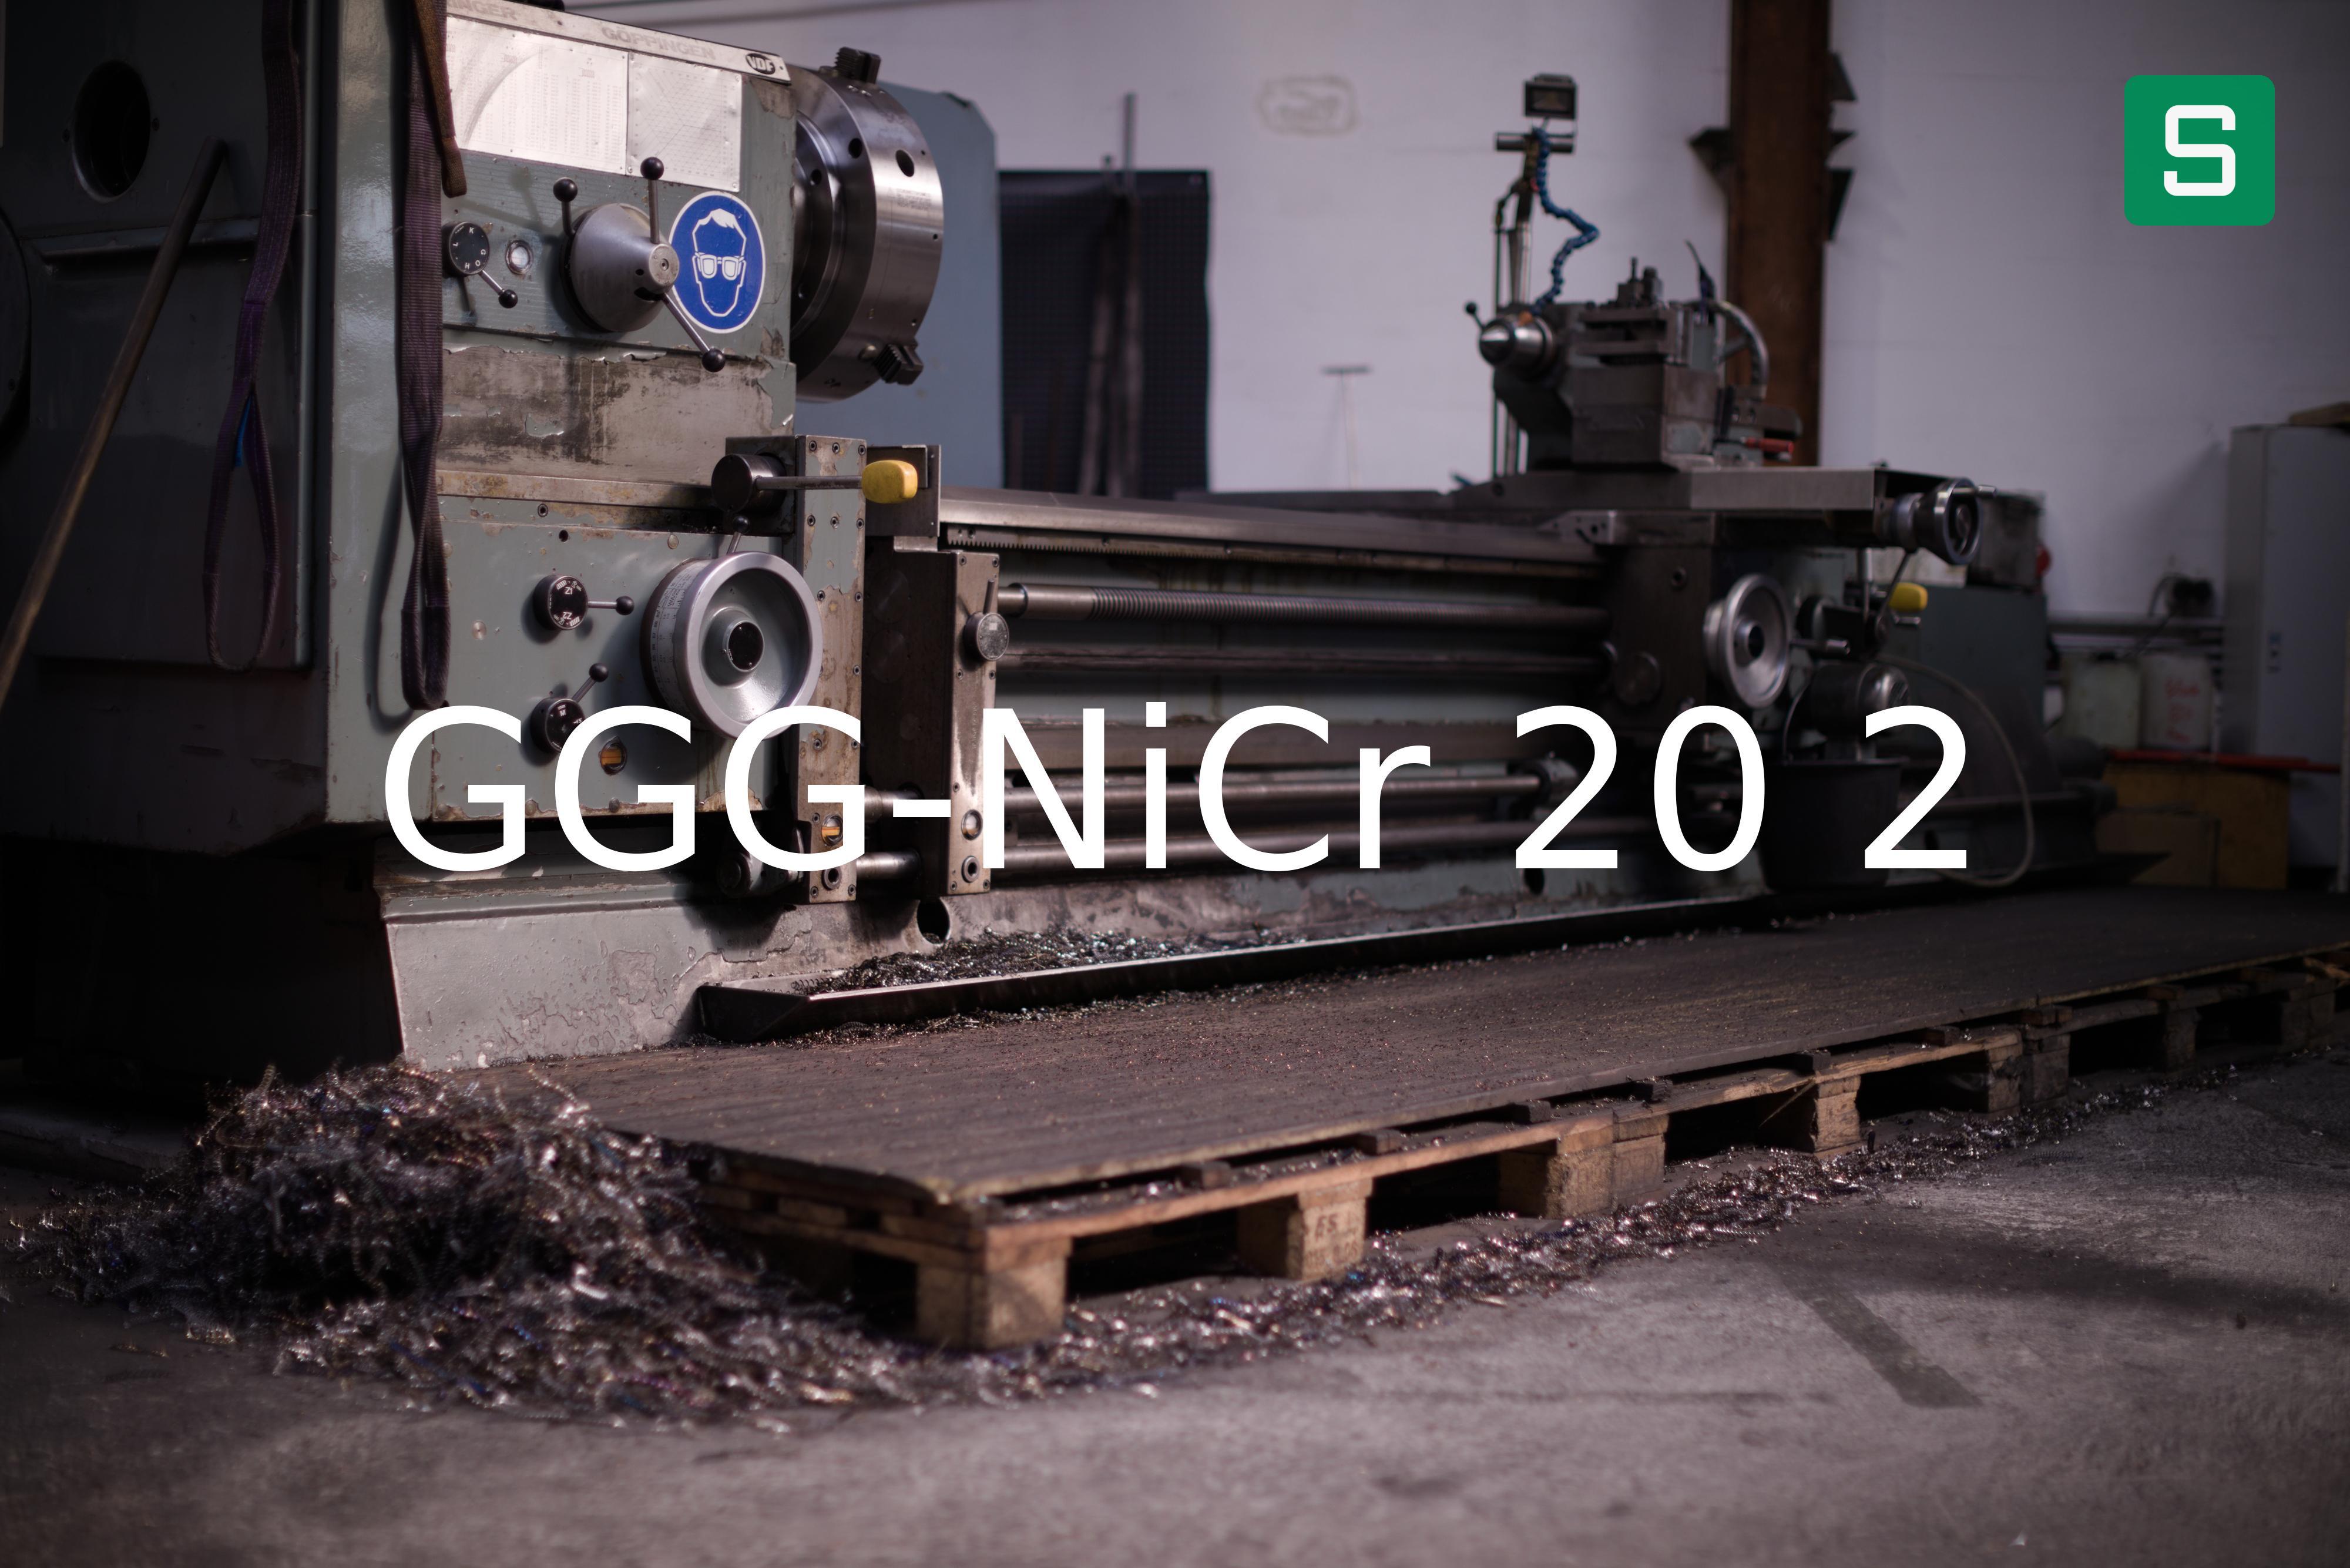 Stahlwerkstoff: GGG-NiCr 20 2